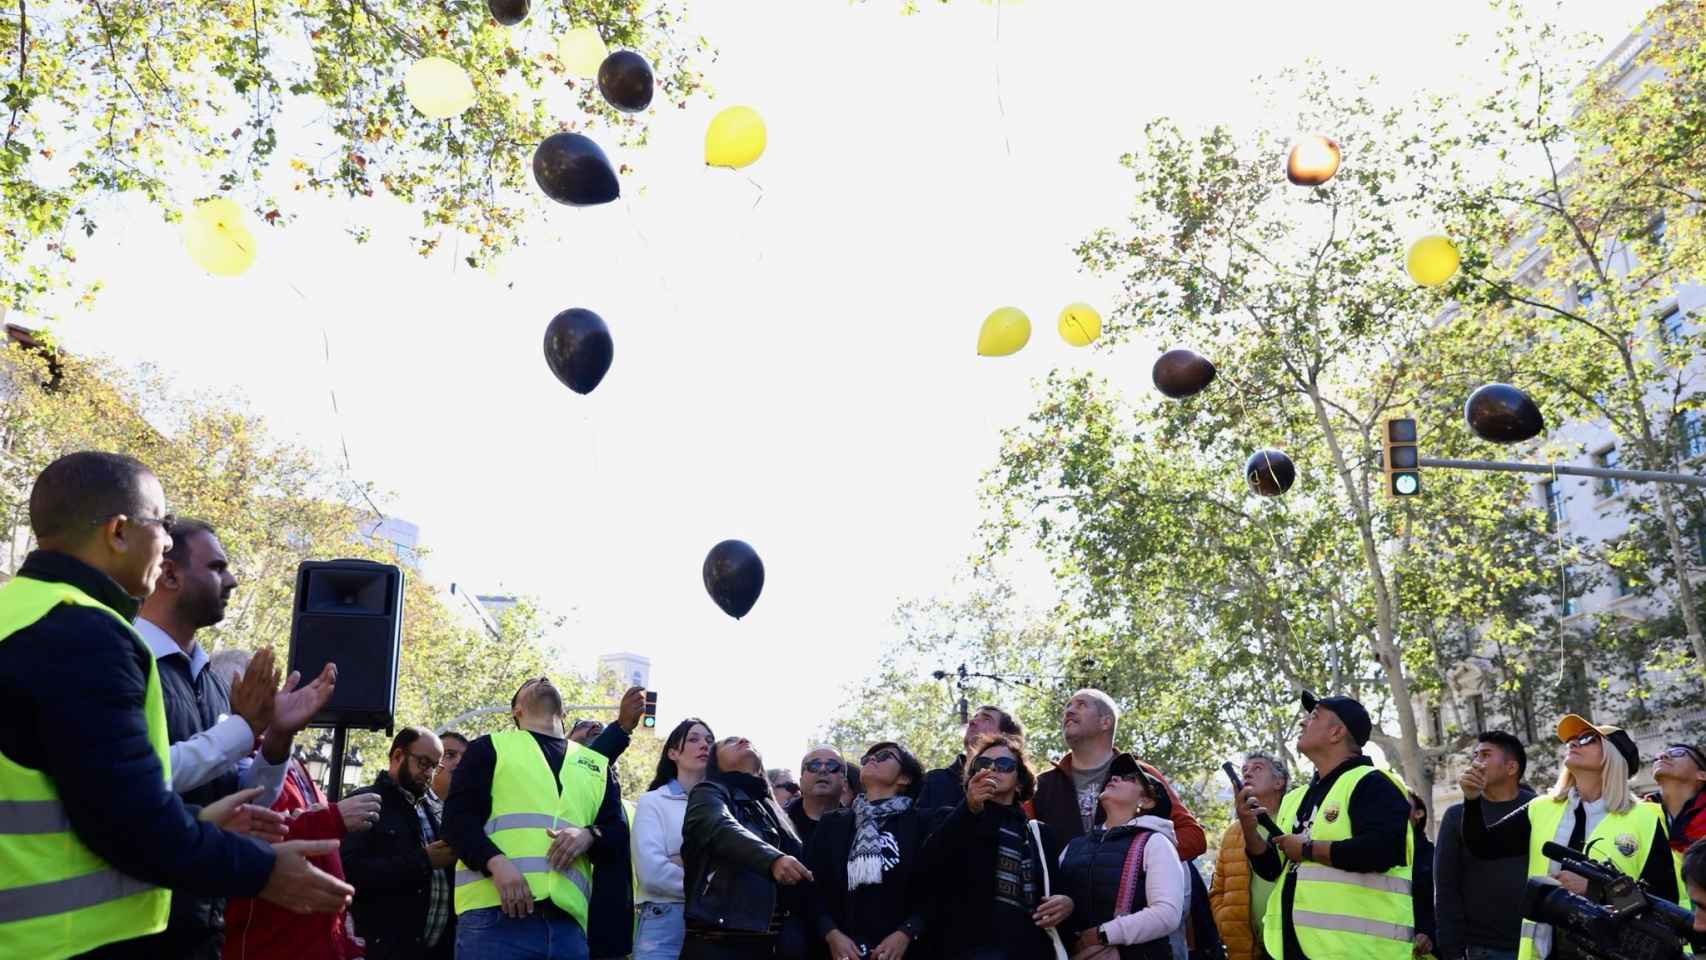 Taxistas y familiares de Carlos lanzando globos negros y amarillos al aire